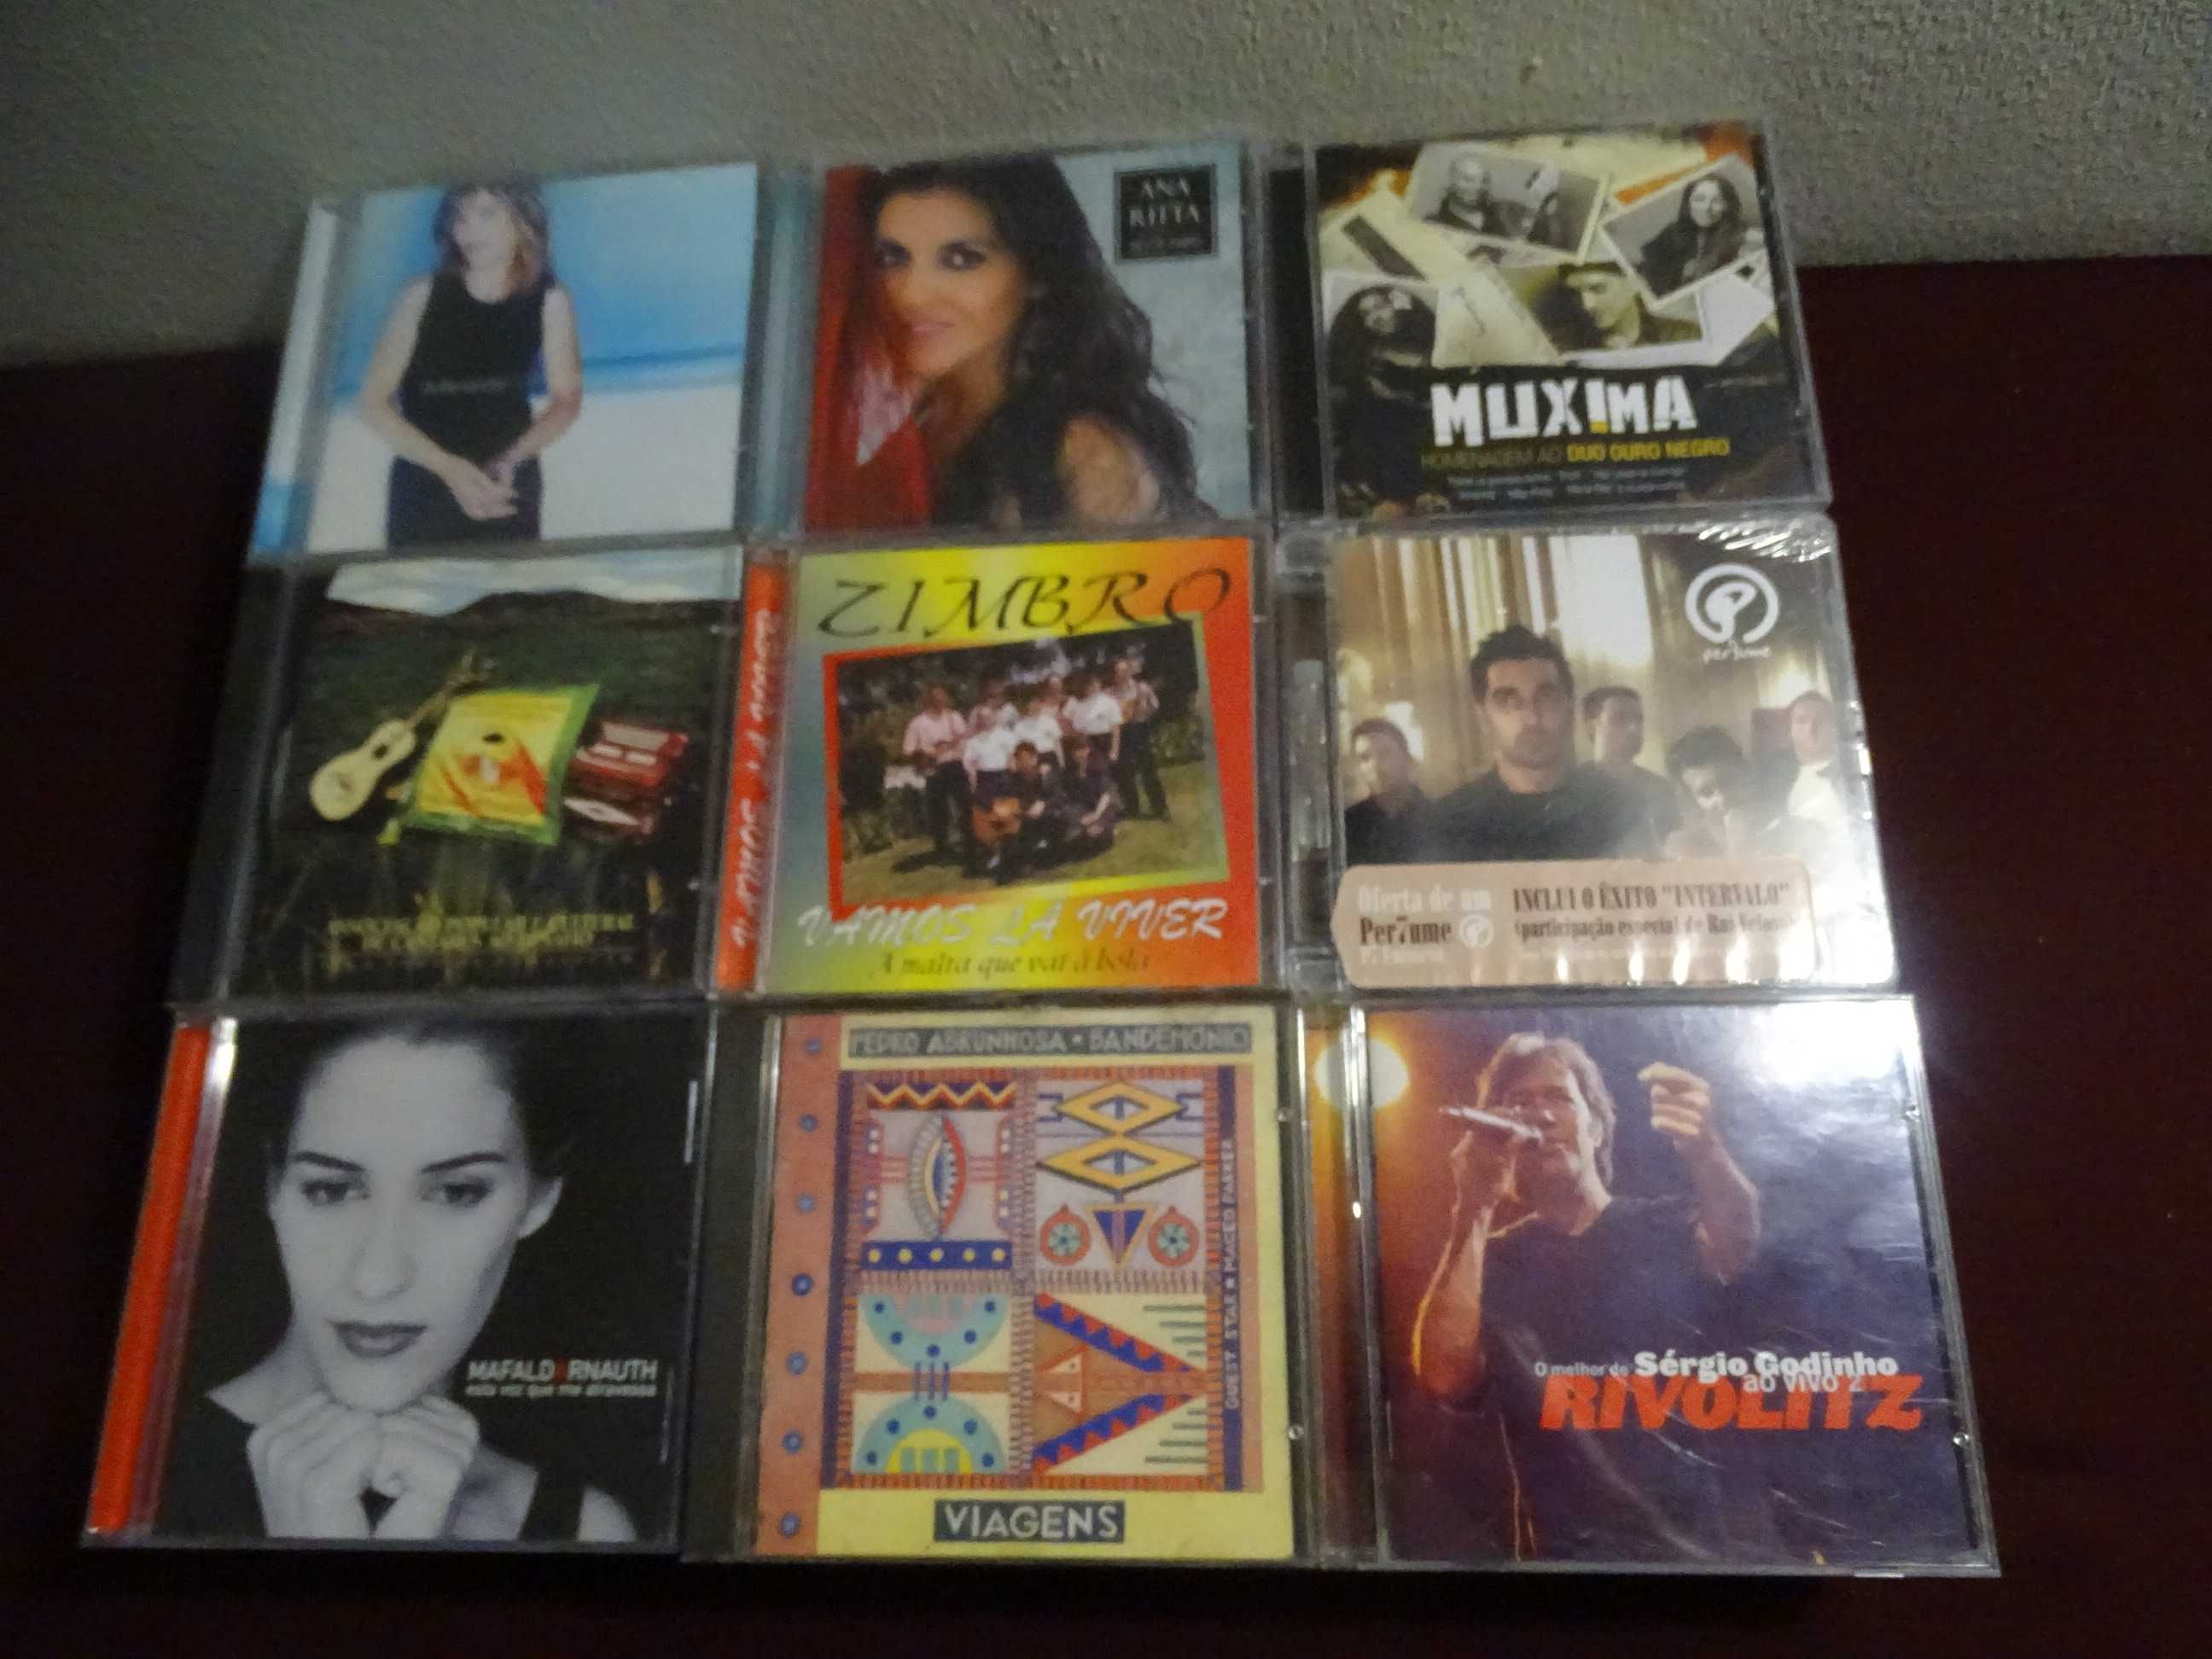 Lote de CDs Musica Portuguesa usados em bom estado 3 euros cada CD